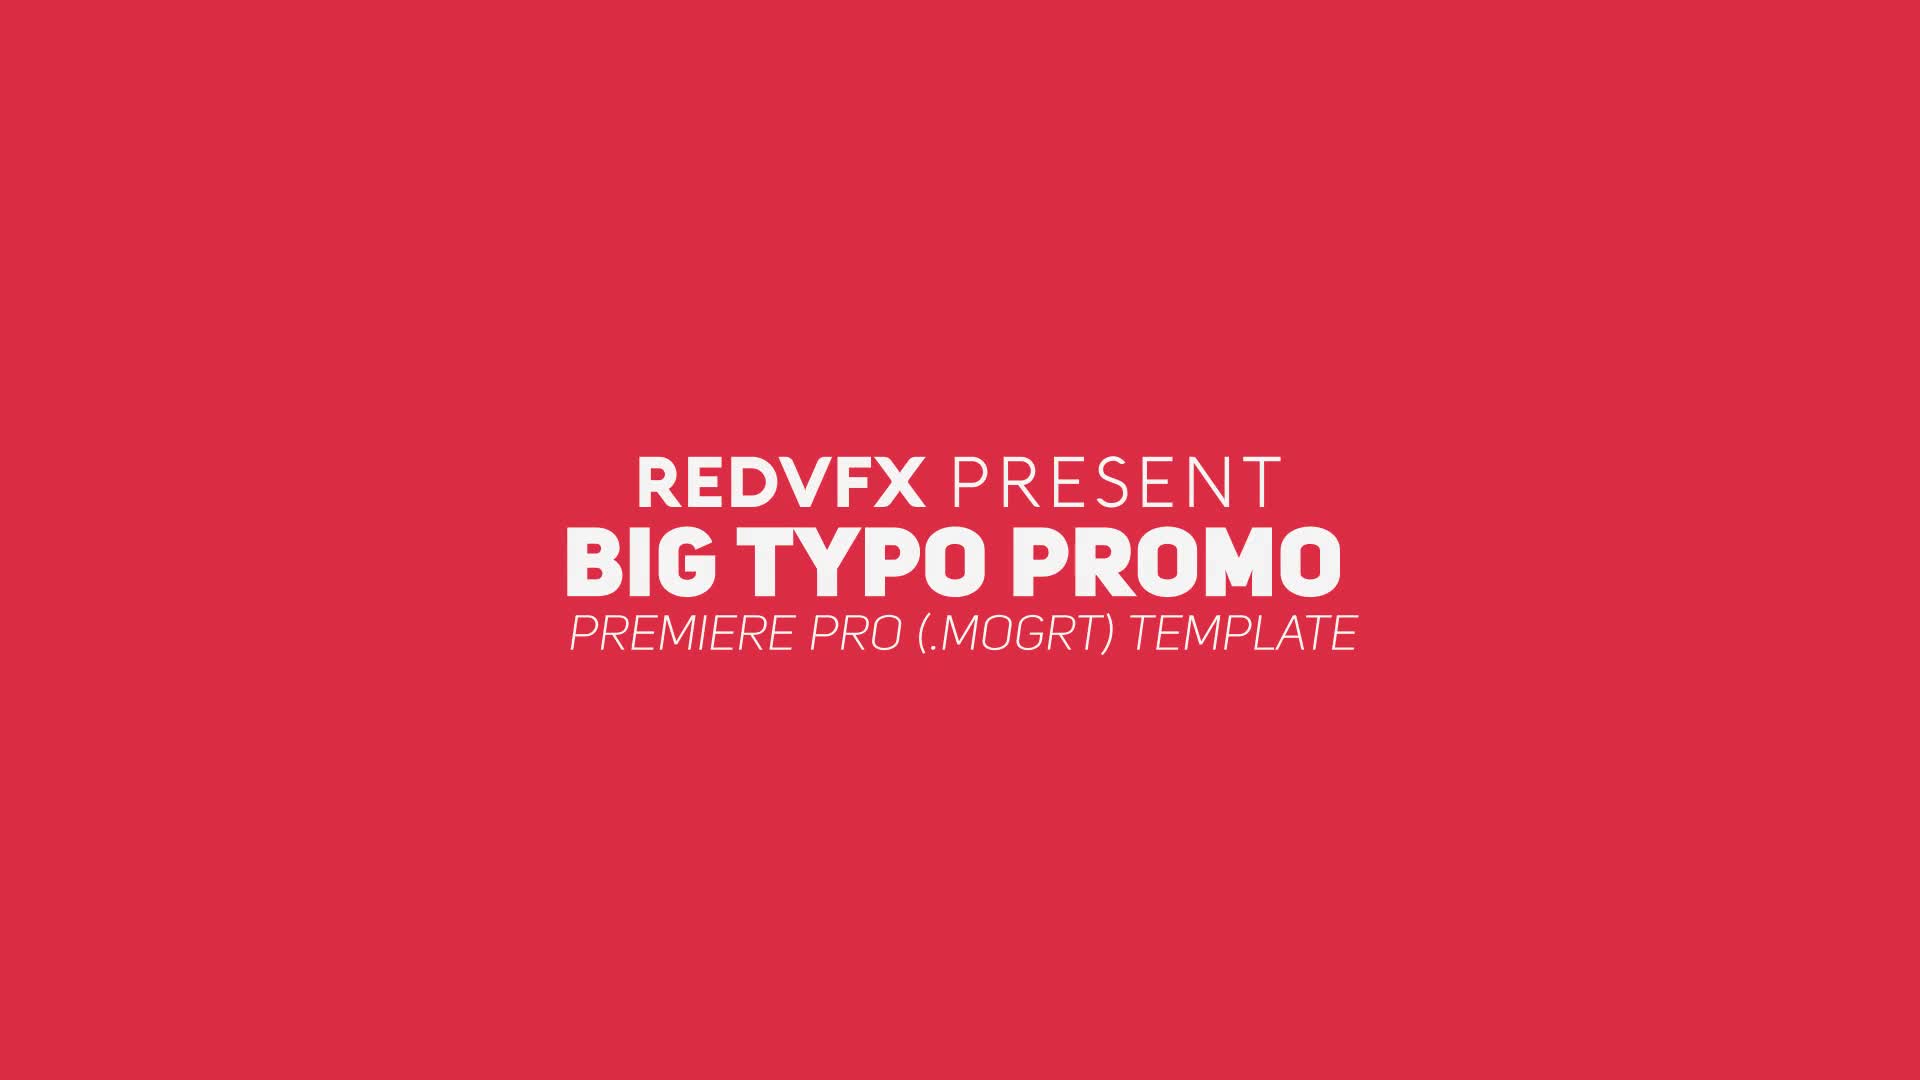 Big Typo Promo for Premiere Pro Videohive 28574068 Premiere Pro Image 1